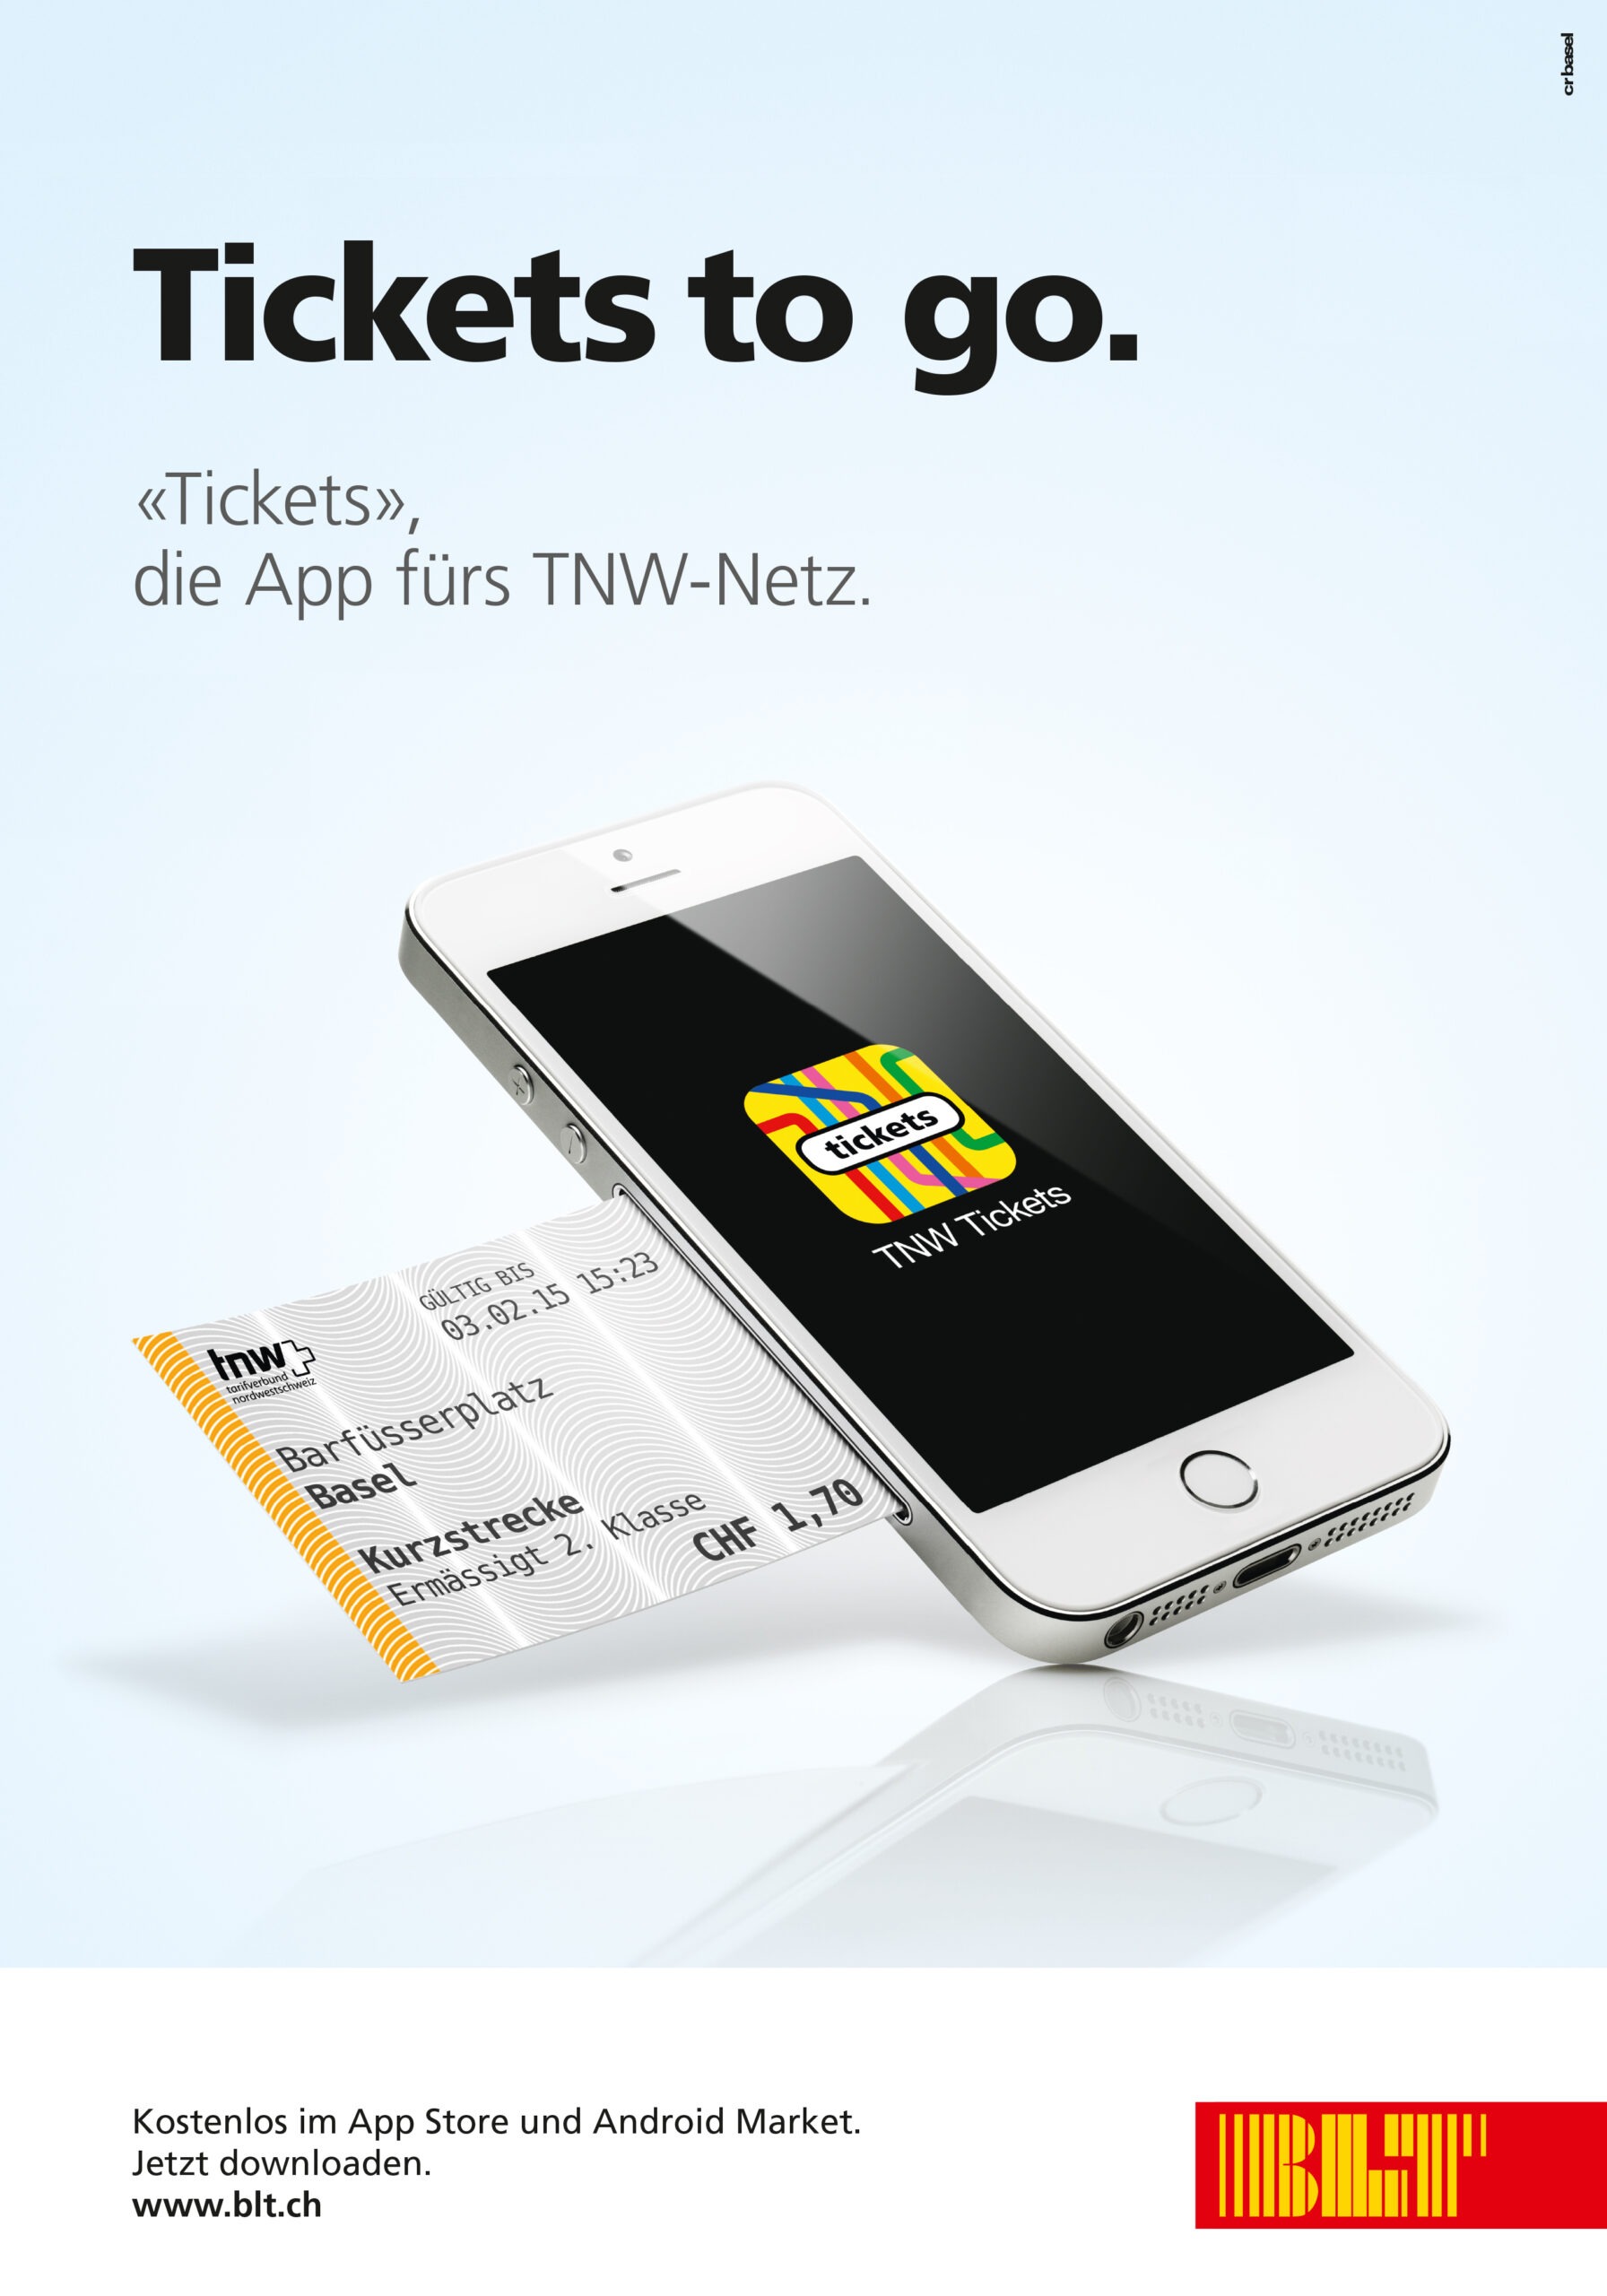 cr Basel Werbeagentur Ticket App Kampagne